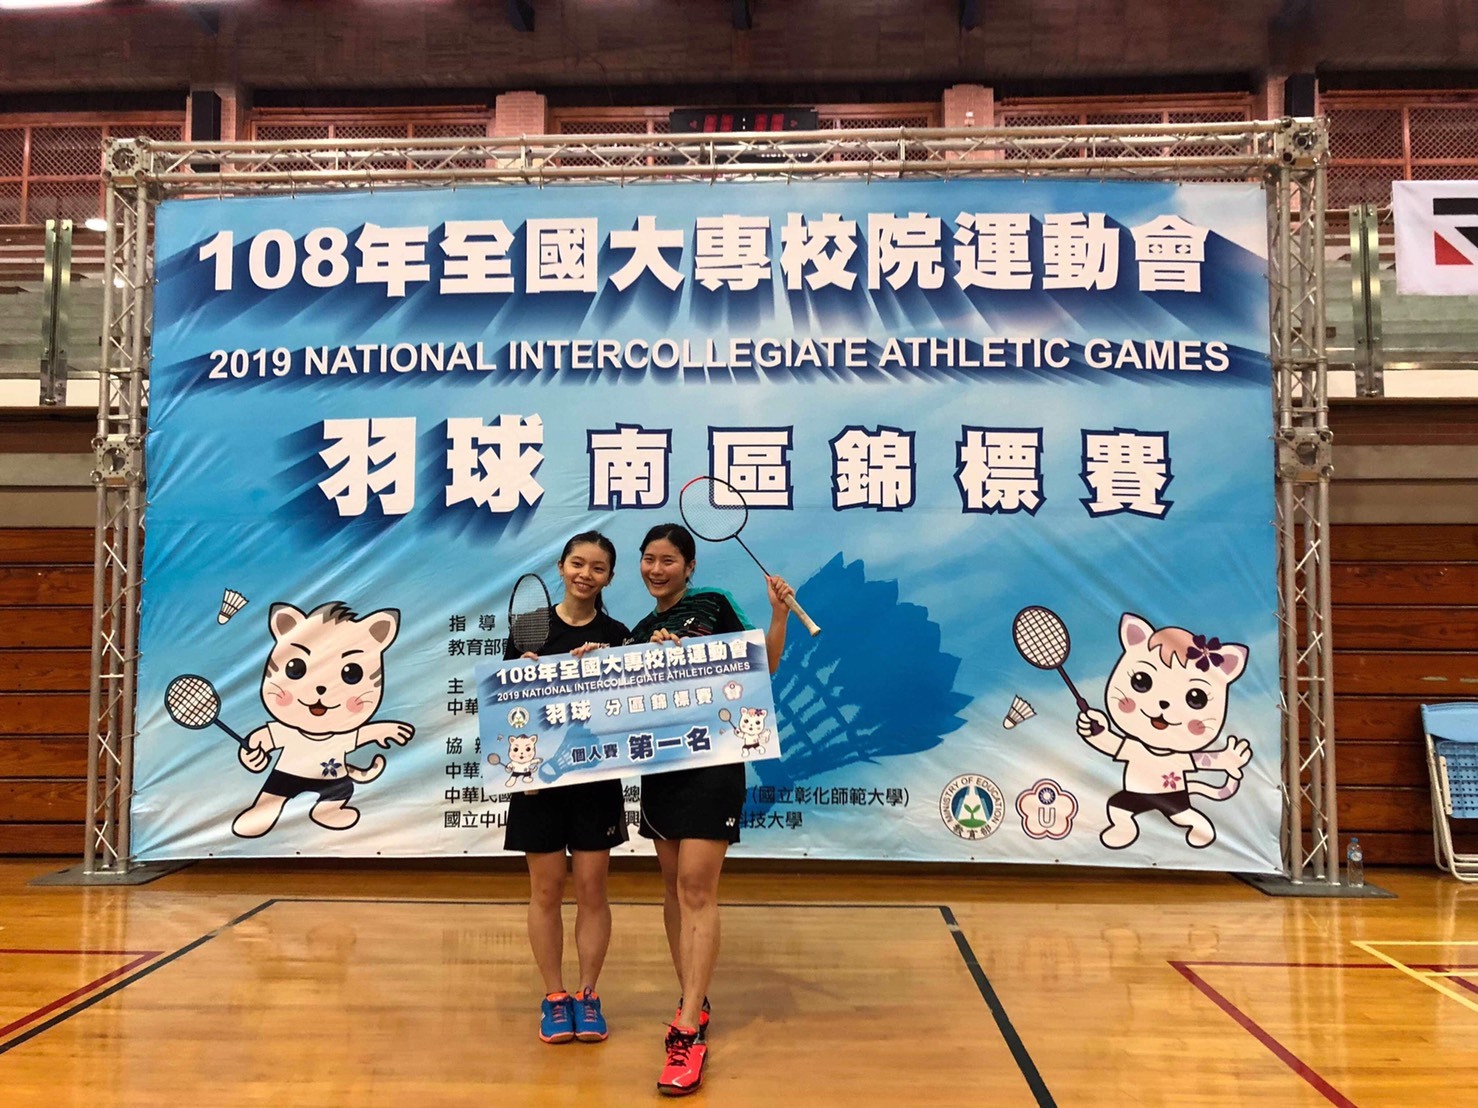 翁子凌獲2019全國全國大專校院運動會羽球南區錦標賽女雙第一名